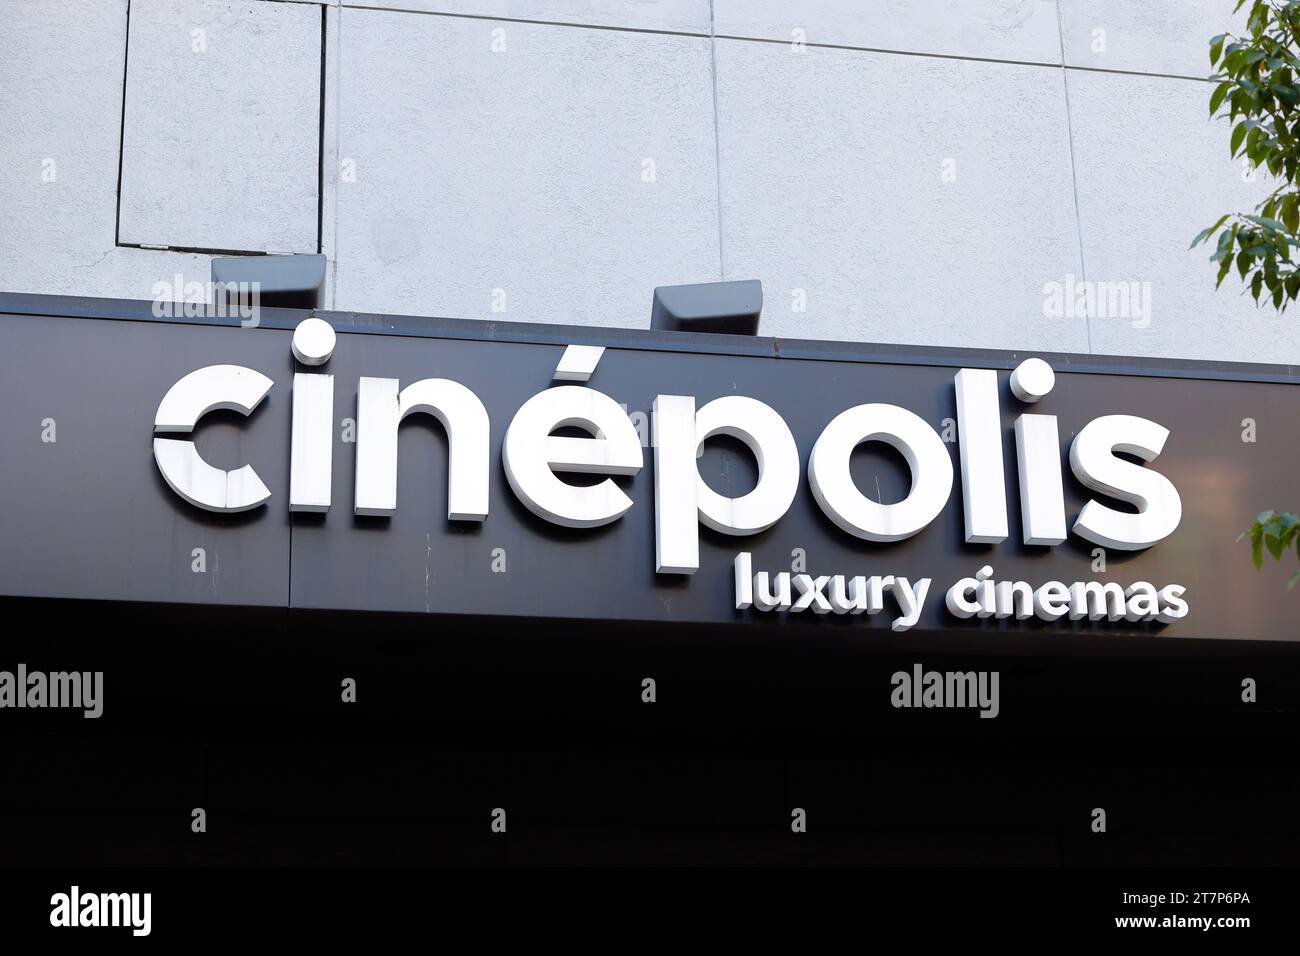 Beschilderung für Cinépolis, eine luxuriöse Kinokette. Stockfoto